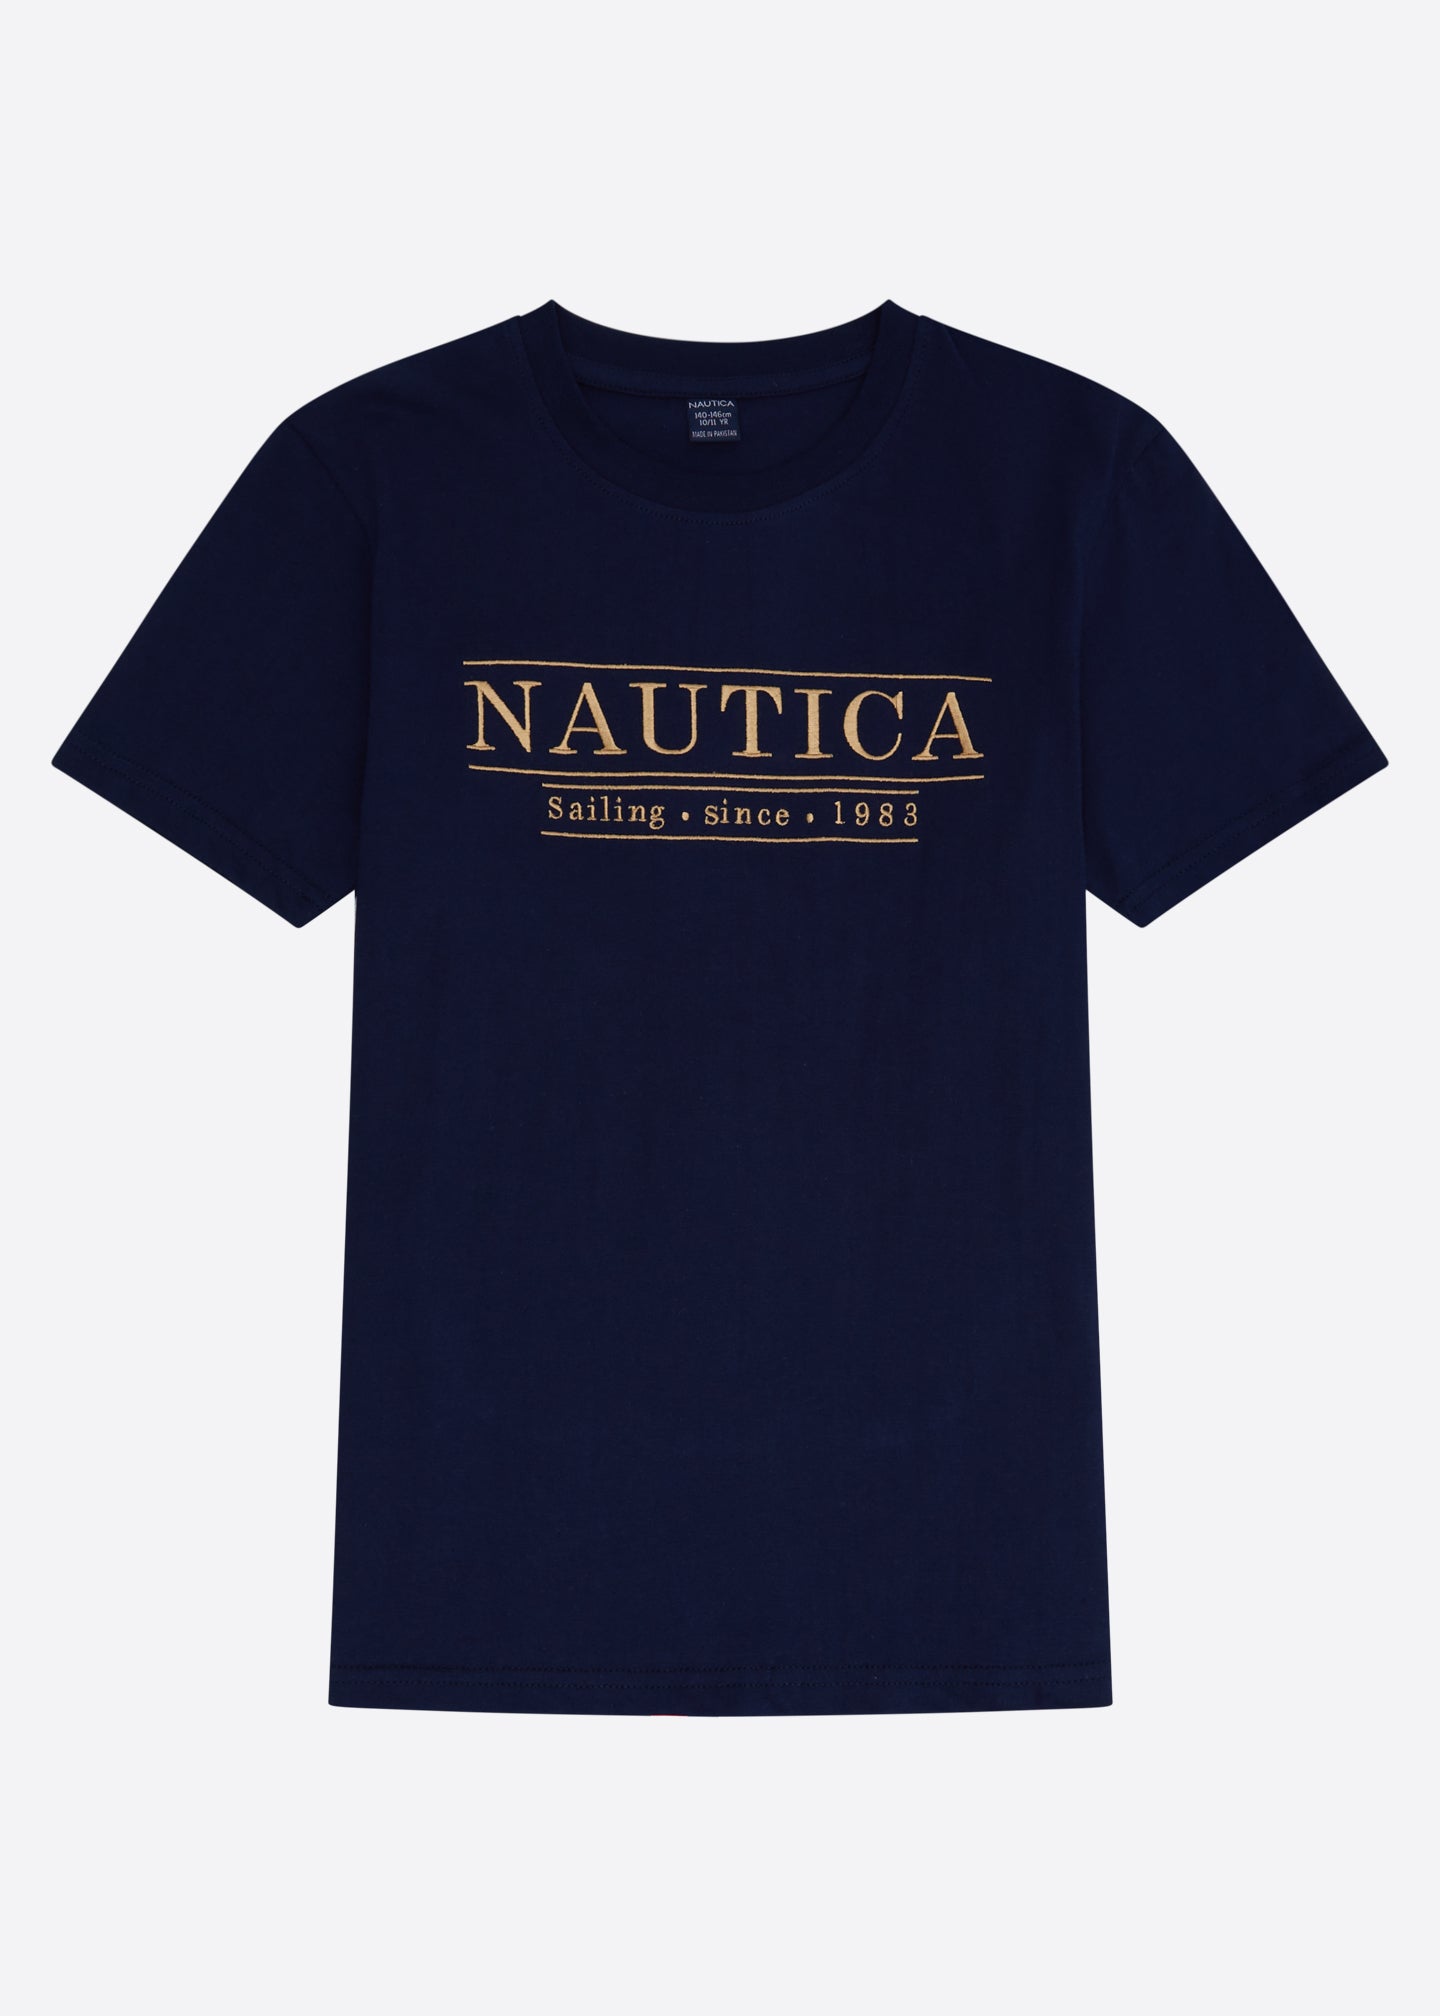 Nautica Heywood T-Shirt Junior  - Dark Navy - Front